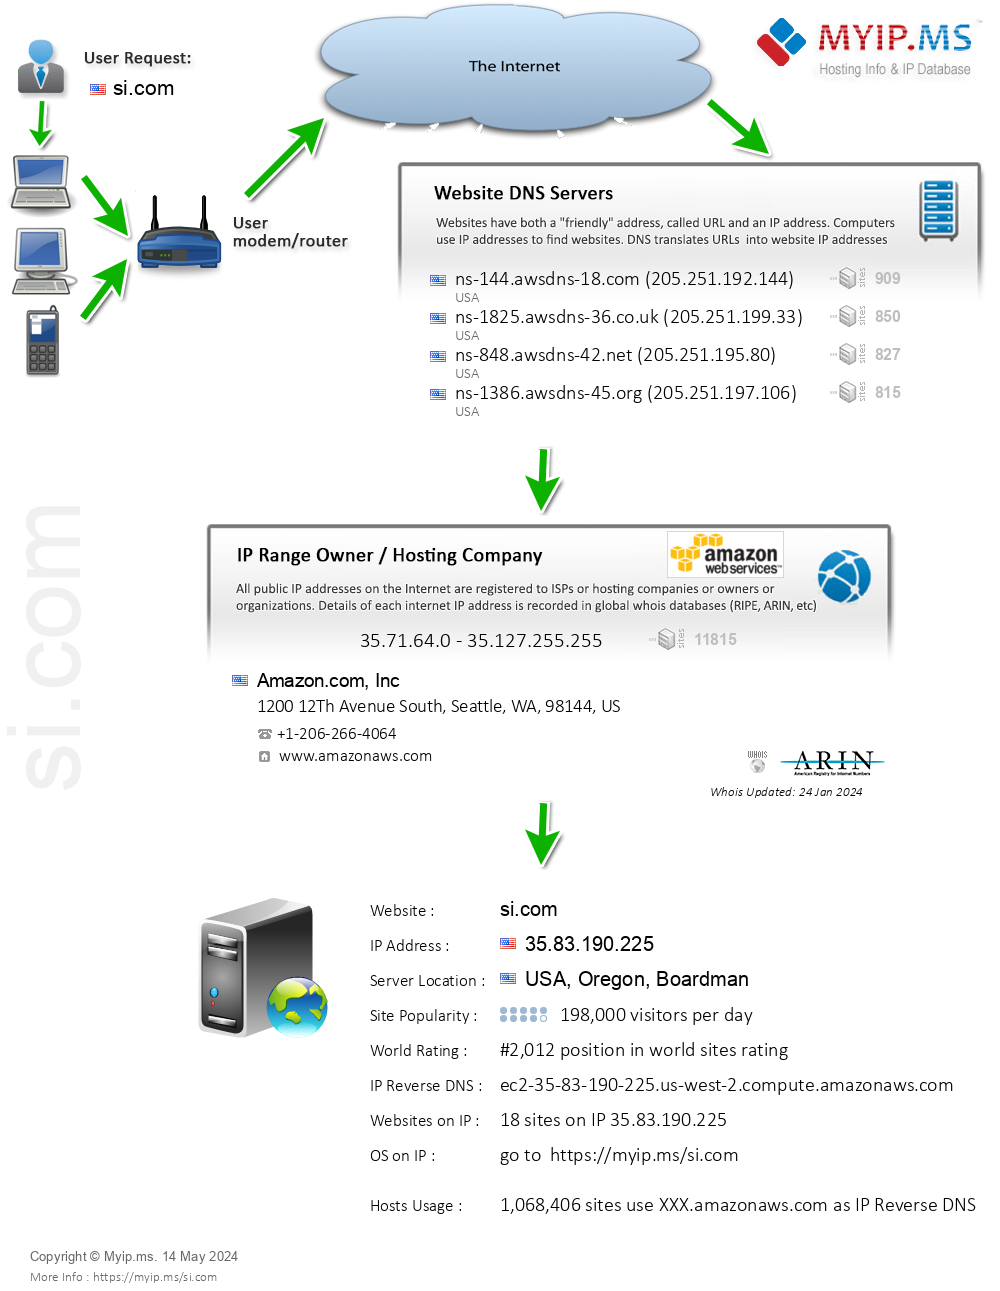 Si.com - Website Hosting Visual IP Diagram